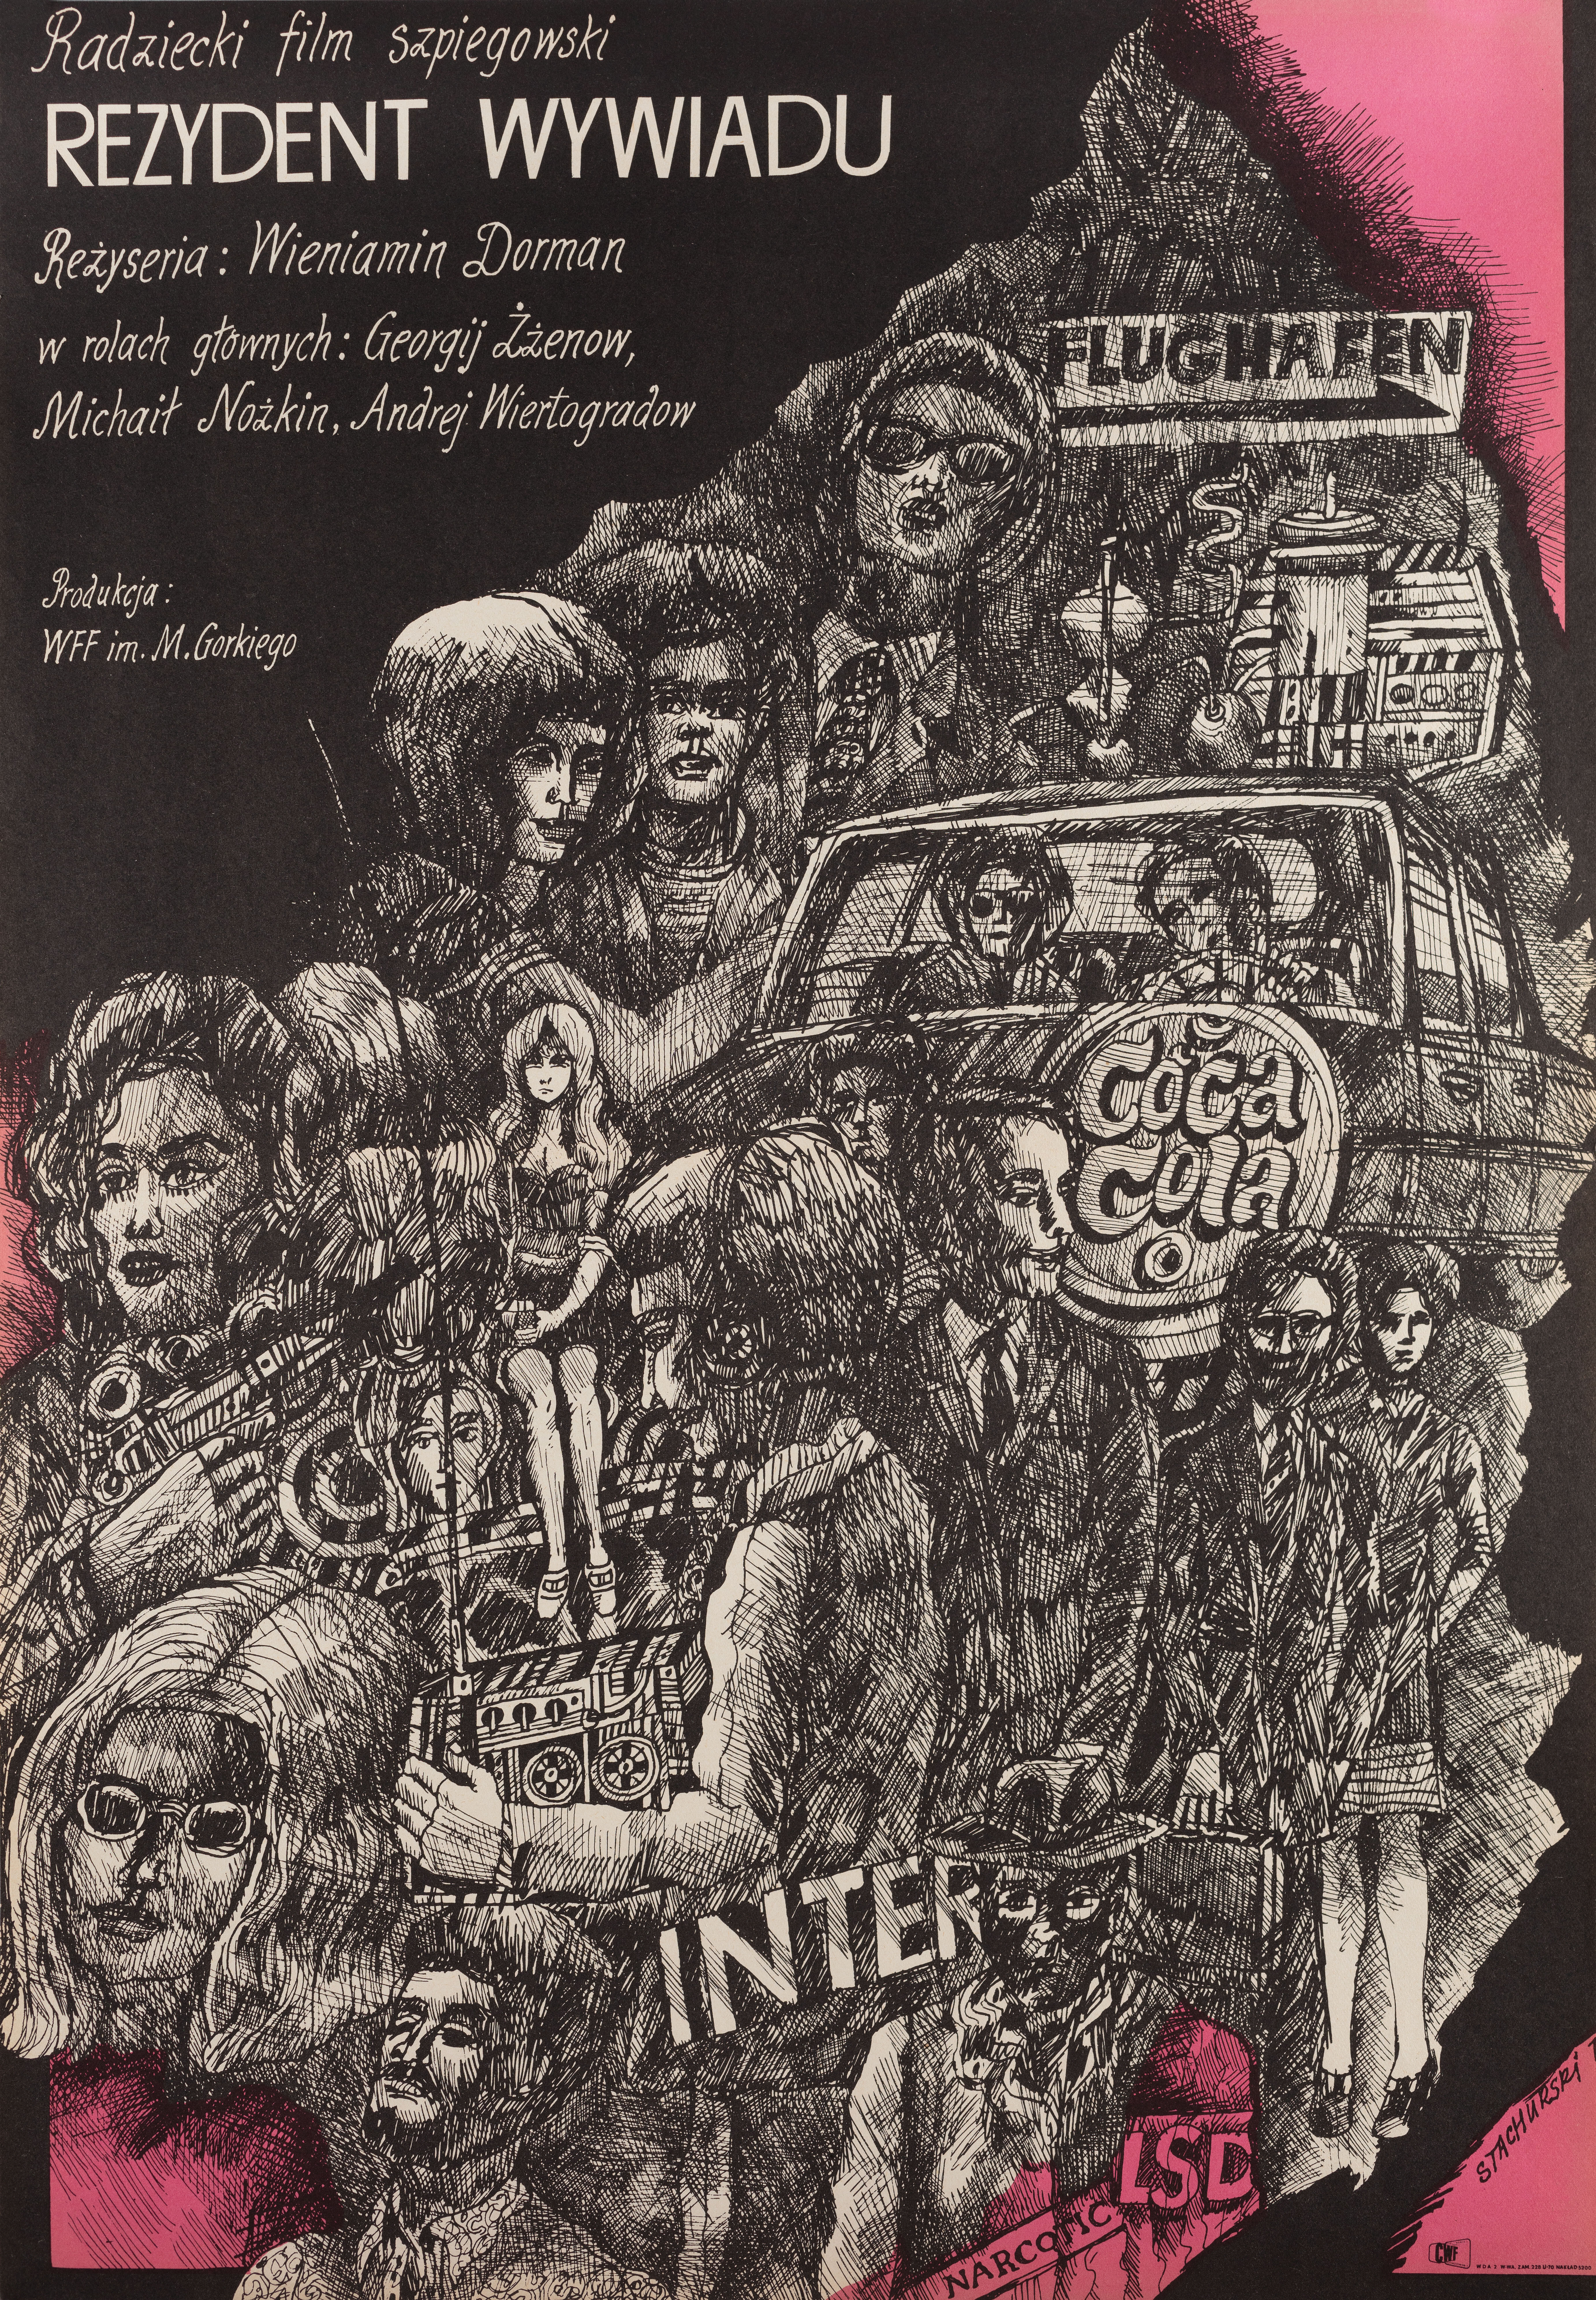 Судба резидента (режиссёр Вениамин Дорман, 1970), польский постер к фильму, автор Мариан Стачурски, 1971 год